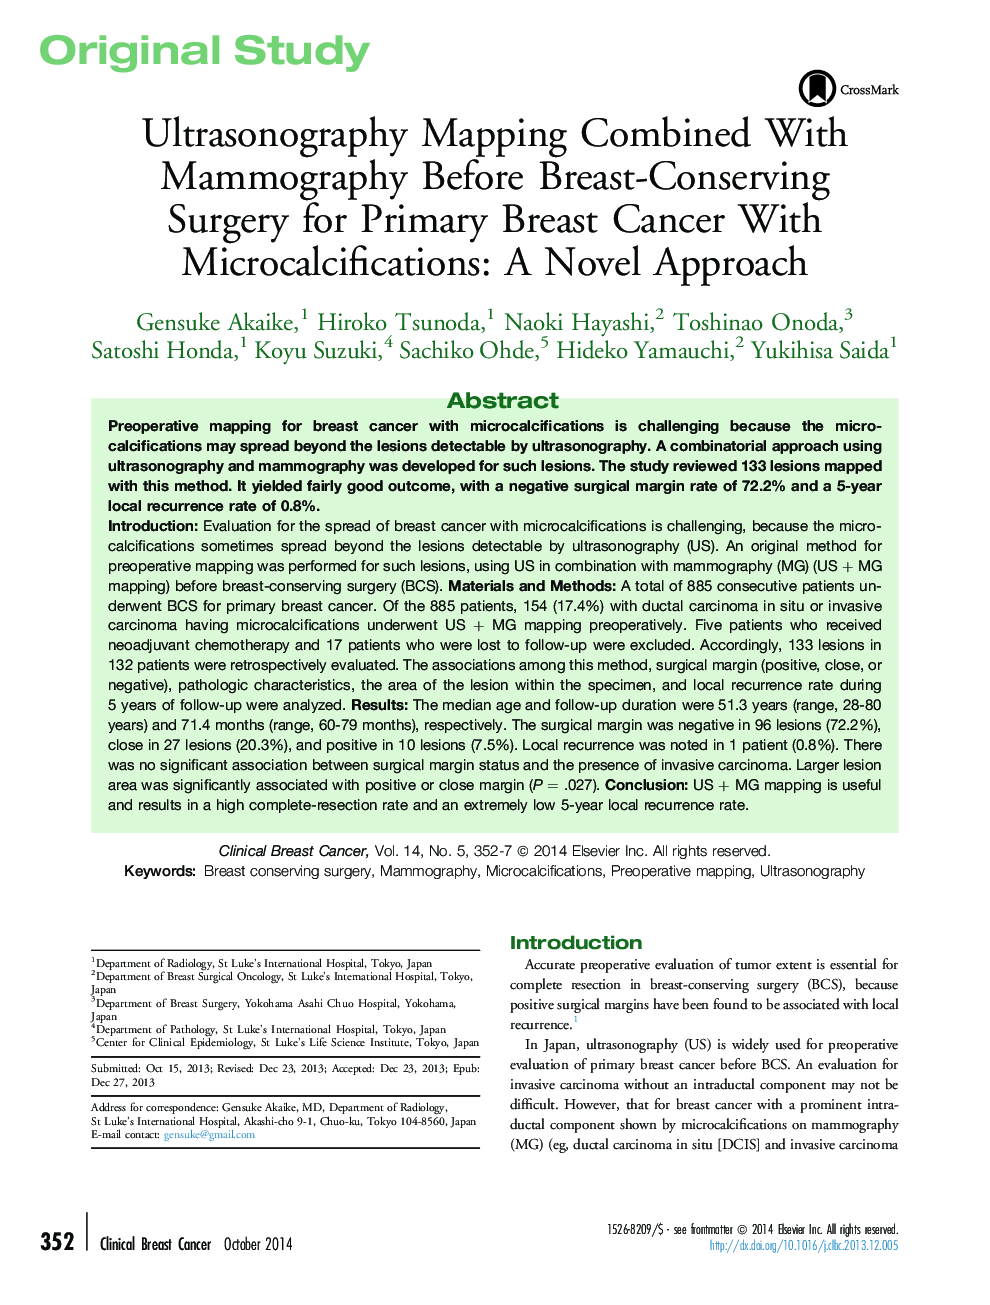 نقشه برداری سونوگرافی همراه با ماموگرافی قبل از جراحی نگهداری از پستان برای سرطان پستان اولیه با میکرواراسیون: یک رویکرد جدید 